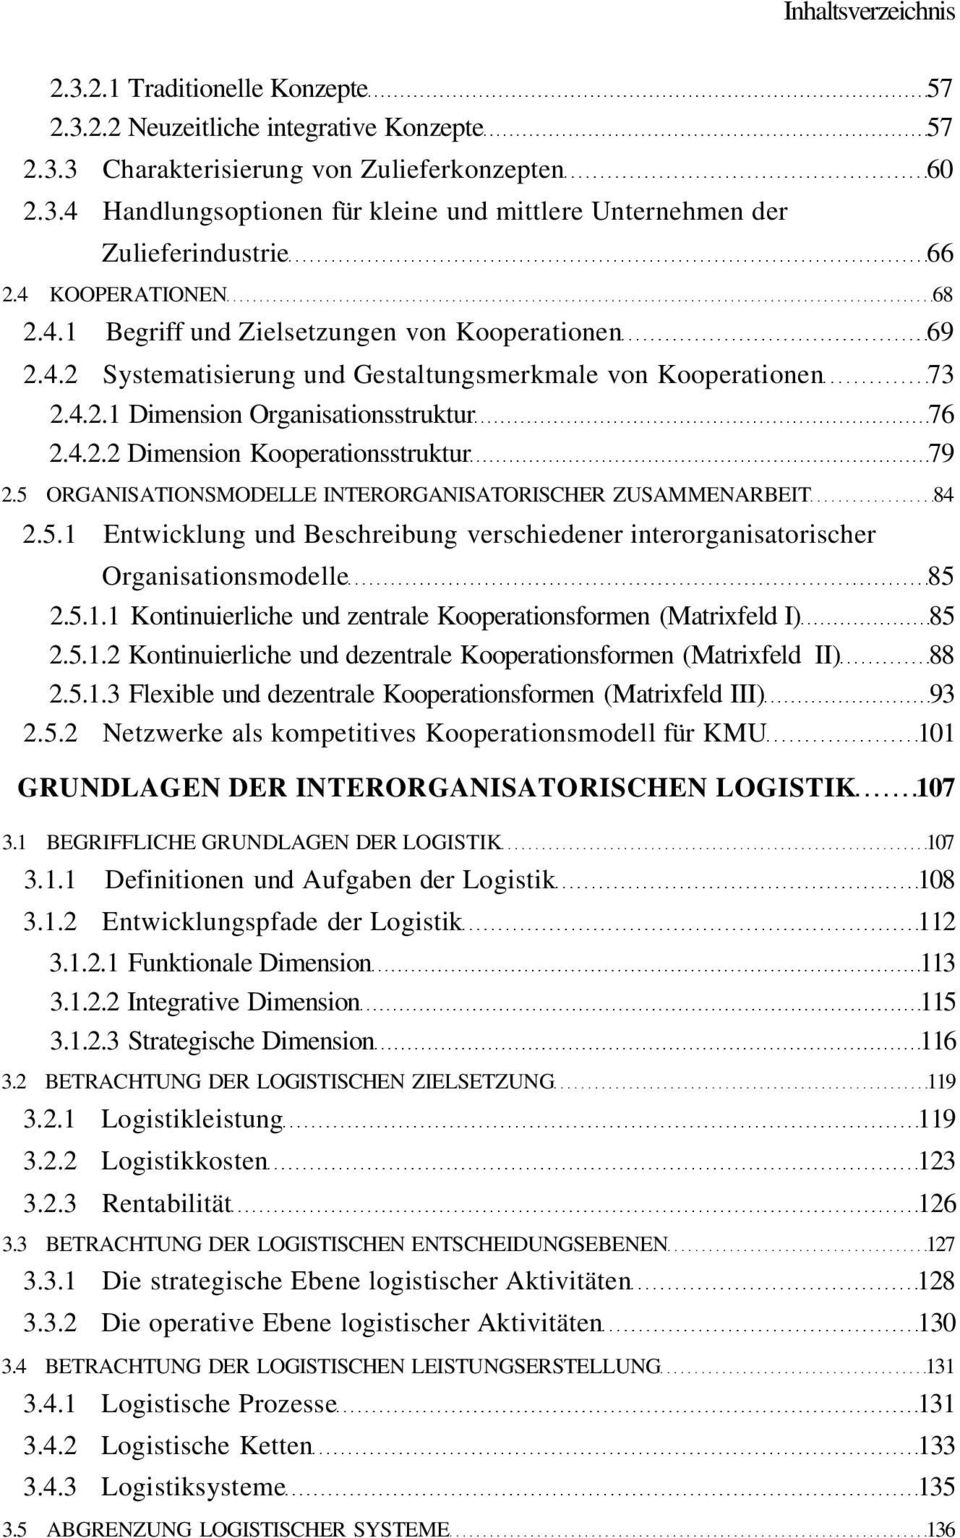 5 ORGANISATIONSMODELLE INTERORGANISATORISCHER ZUSAMMENARBEIT 84 2.5.1 Entwicklung und Beschreibung verschiedener interorganisatorischer Organisationsmodelle 85 2.5.1.1 Kontinuierliche und zentrale Kooperationsformen (Matrixfeld I) 85 2.